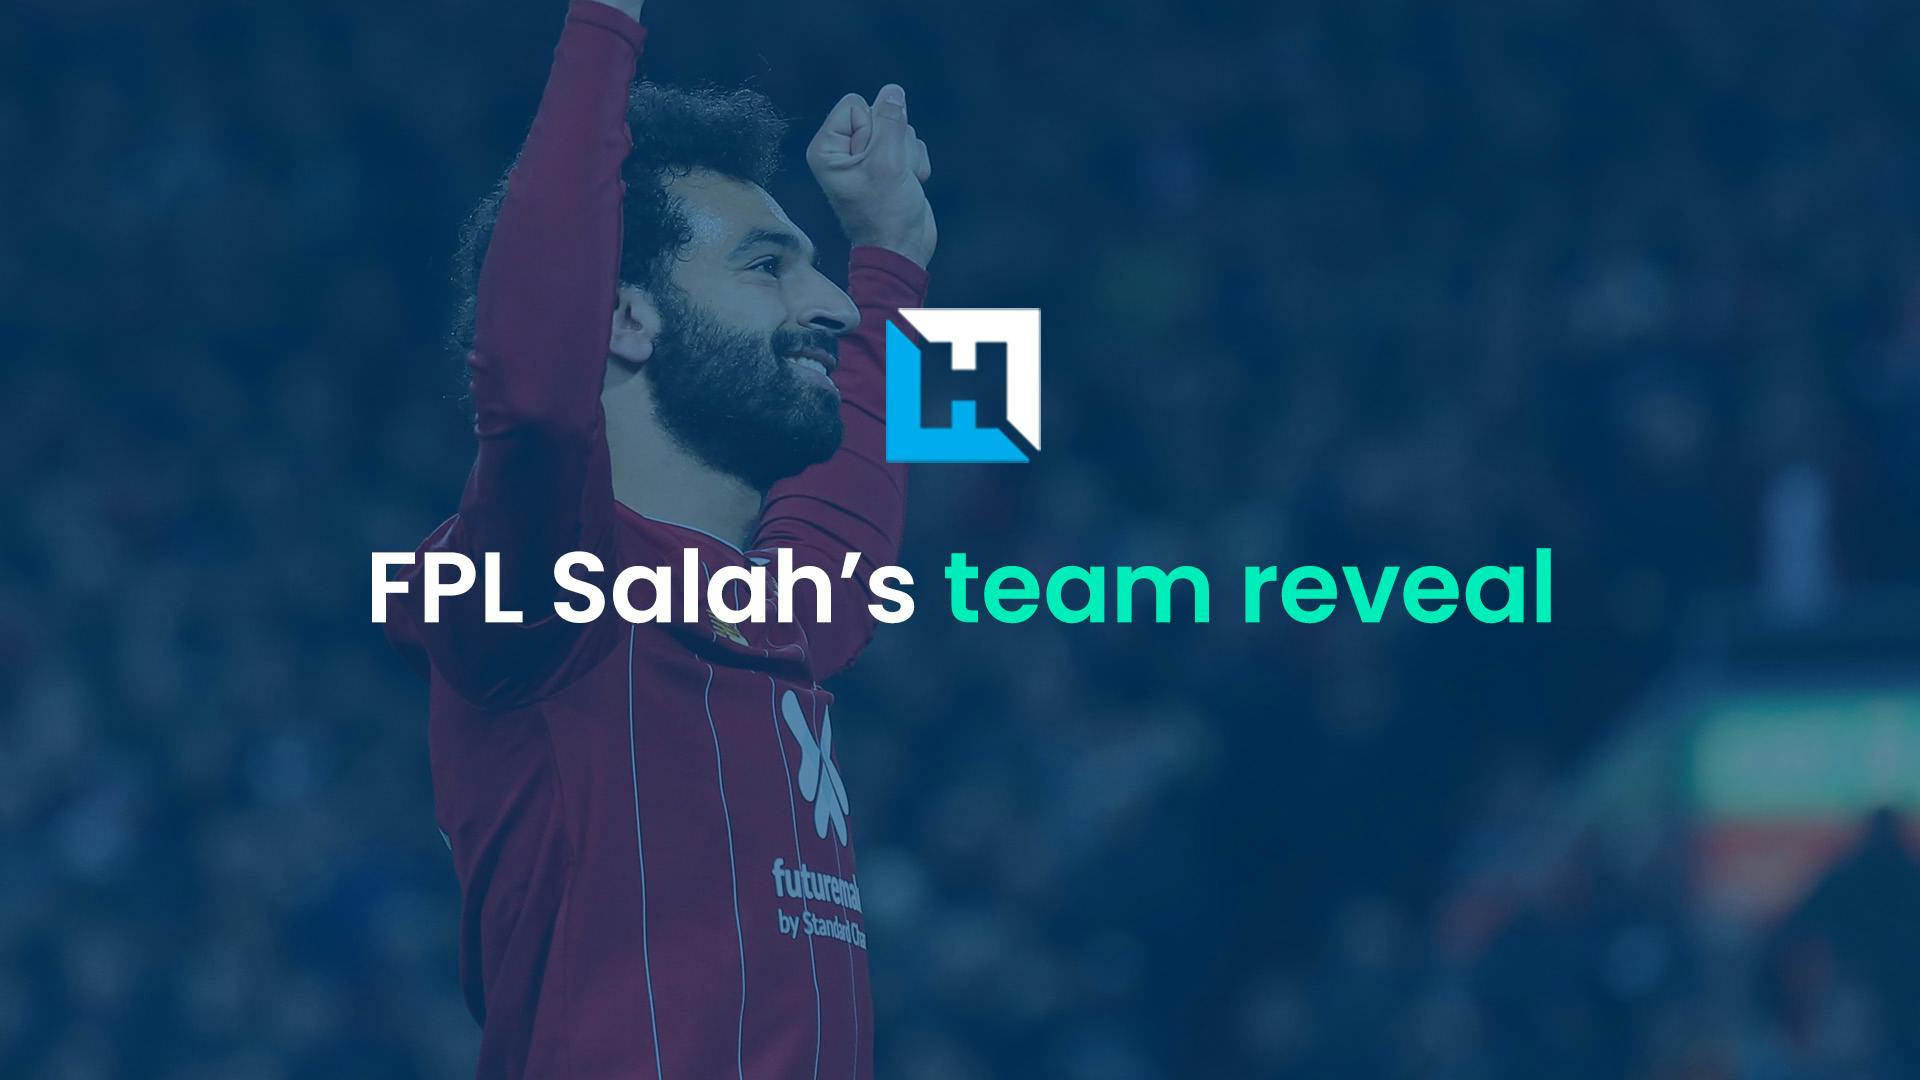 FPL Gameweek 38 team reveal | FPL Salah